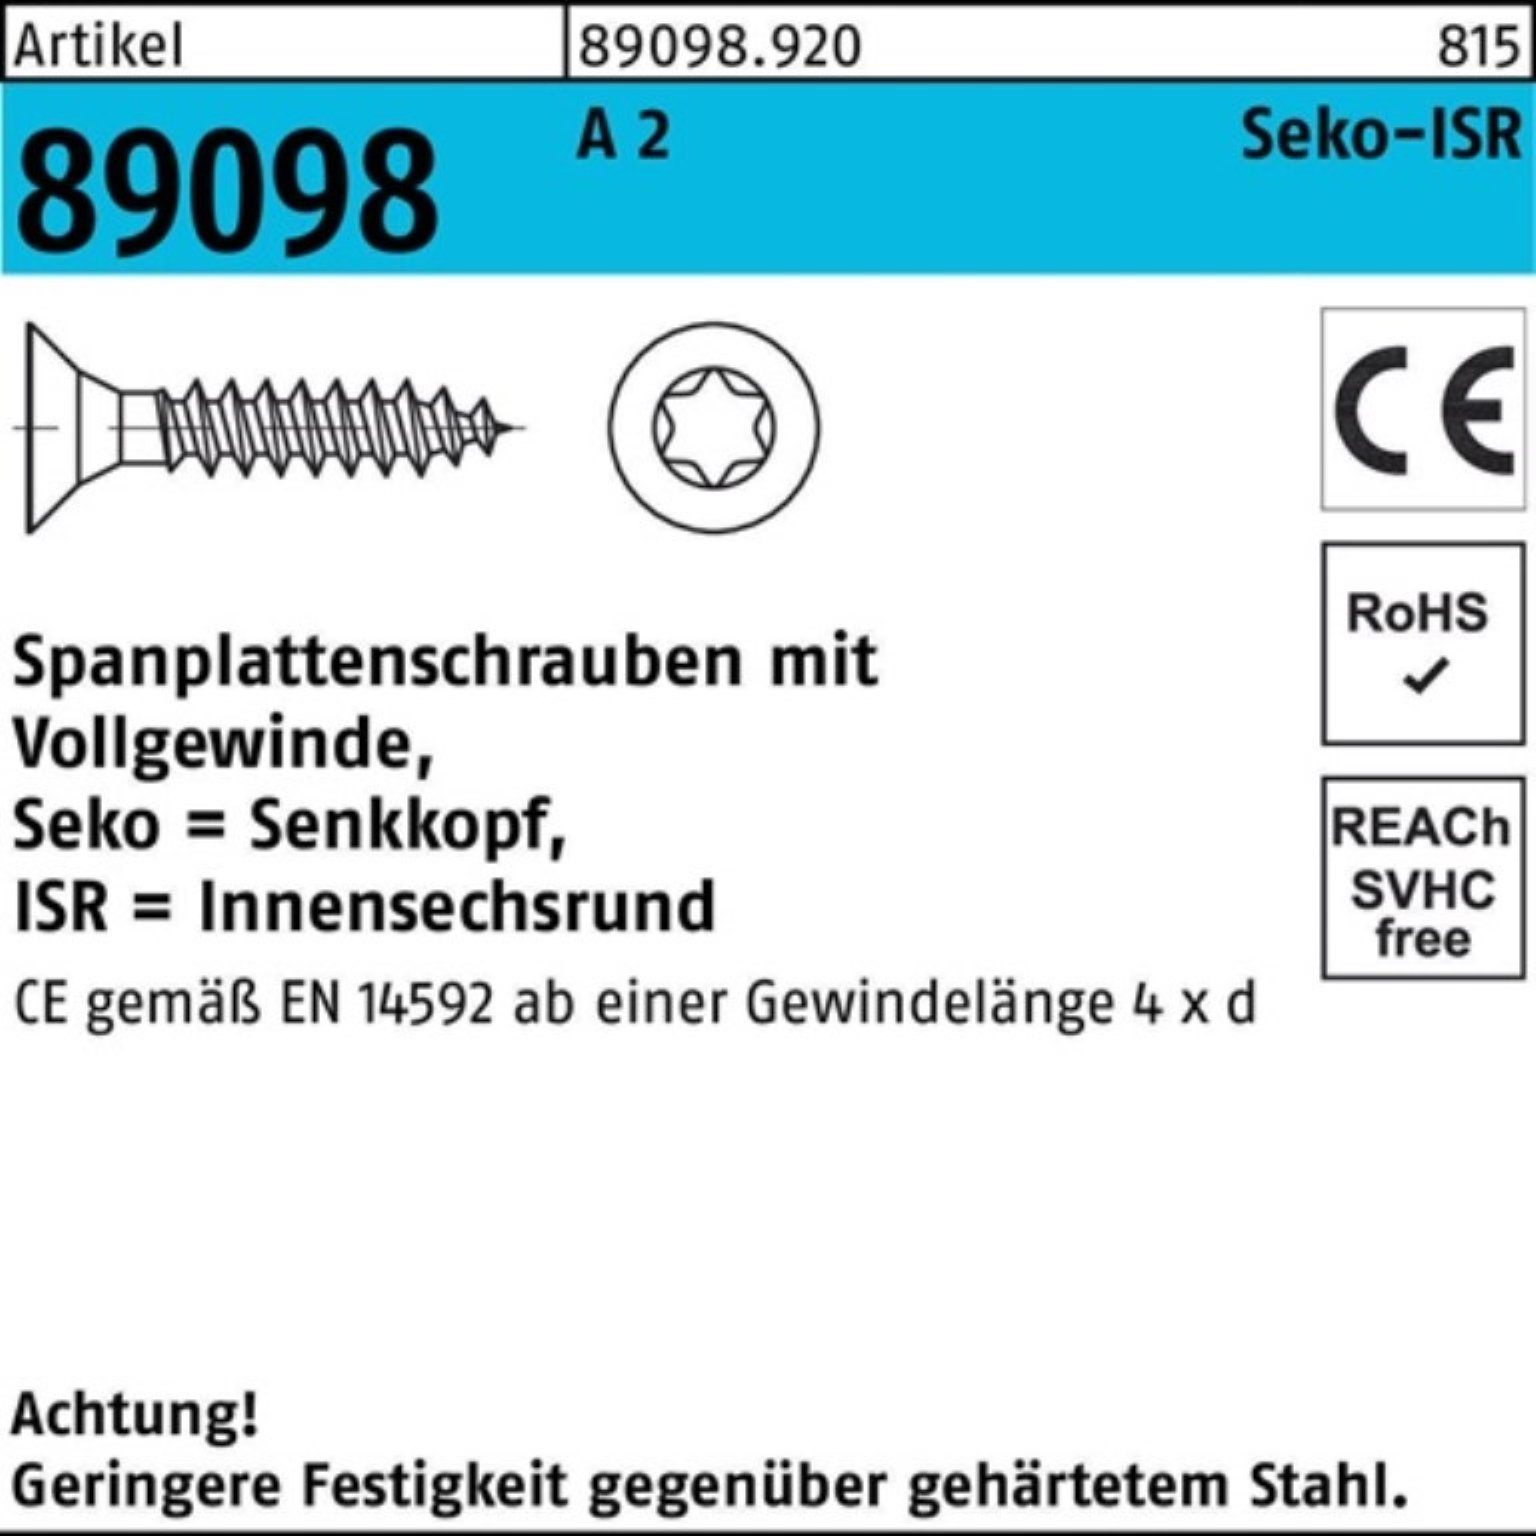 Reyher Spanplattenschraube 1000er Pack Spanplattenschraube R 89098 SEKO ISR VG 5x 50-T25 A 2 1000 | Schrauben